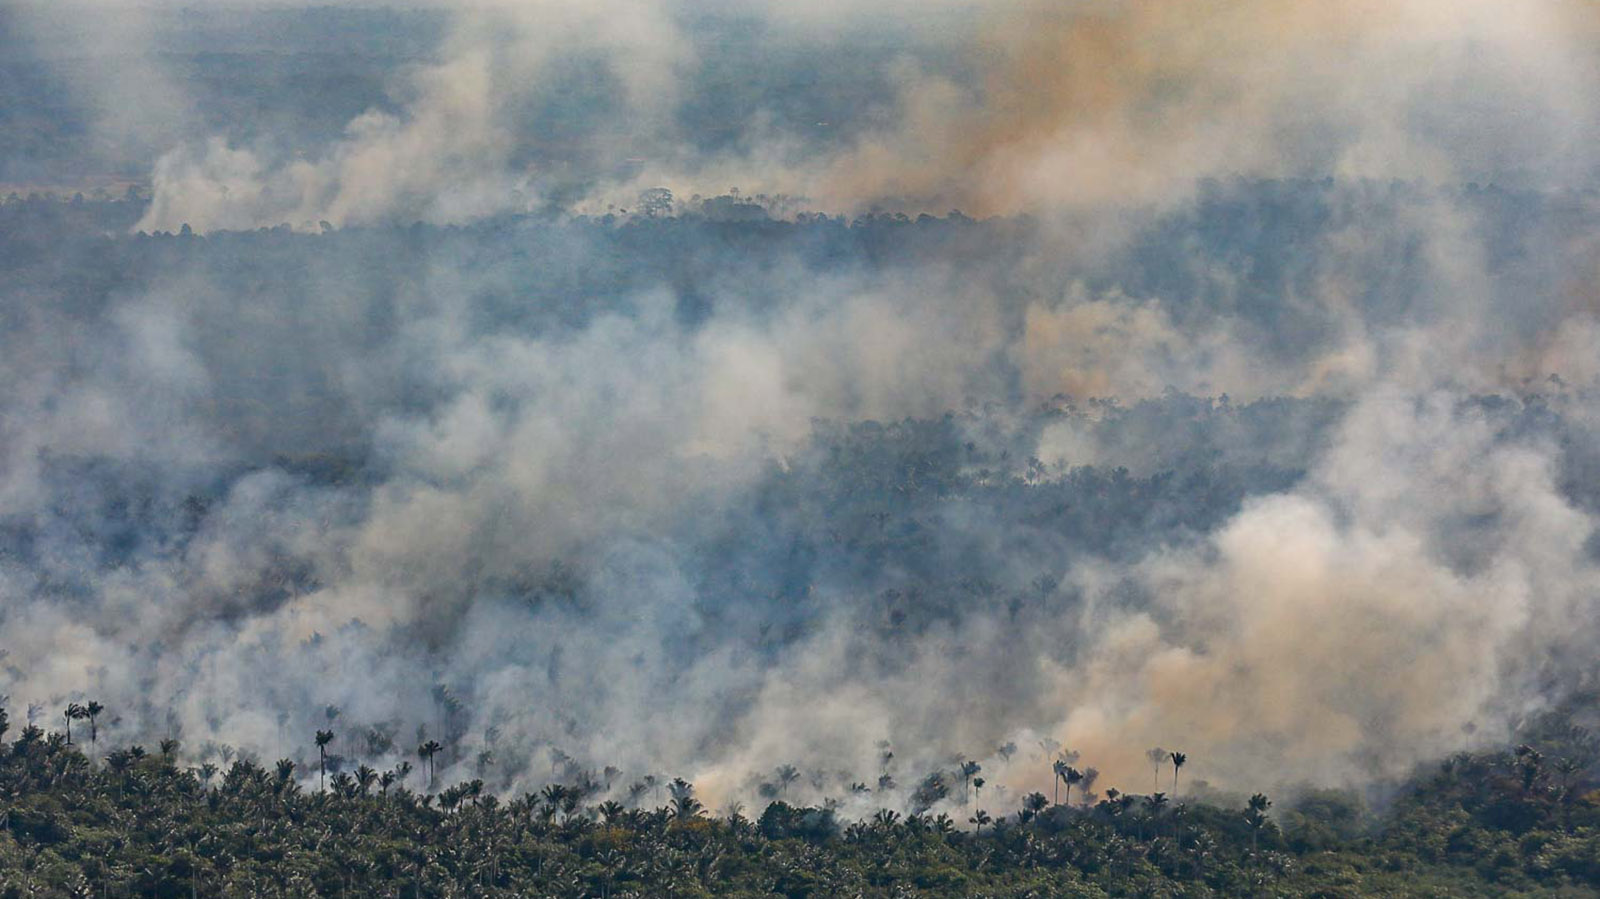 “Começou a ter fogo em floresta, sim”, alerta presidente do Ibama